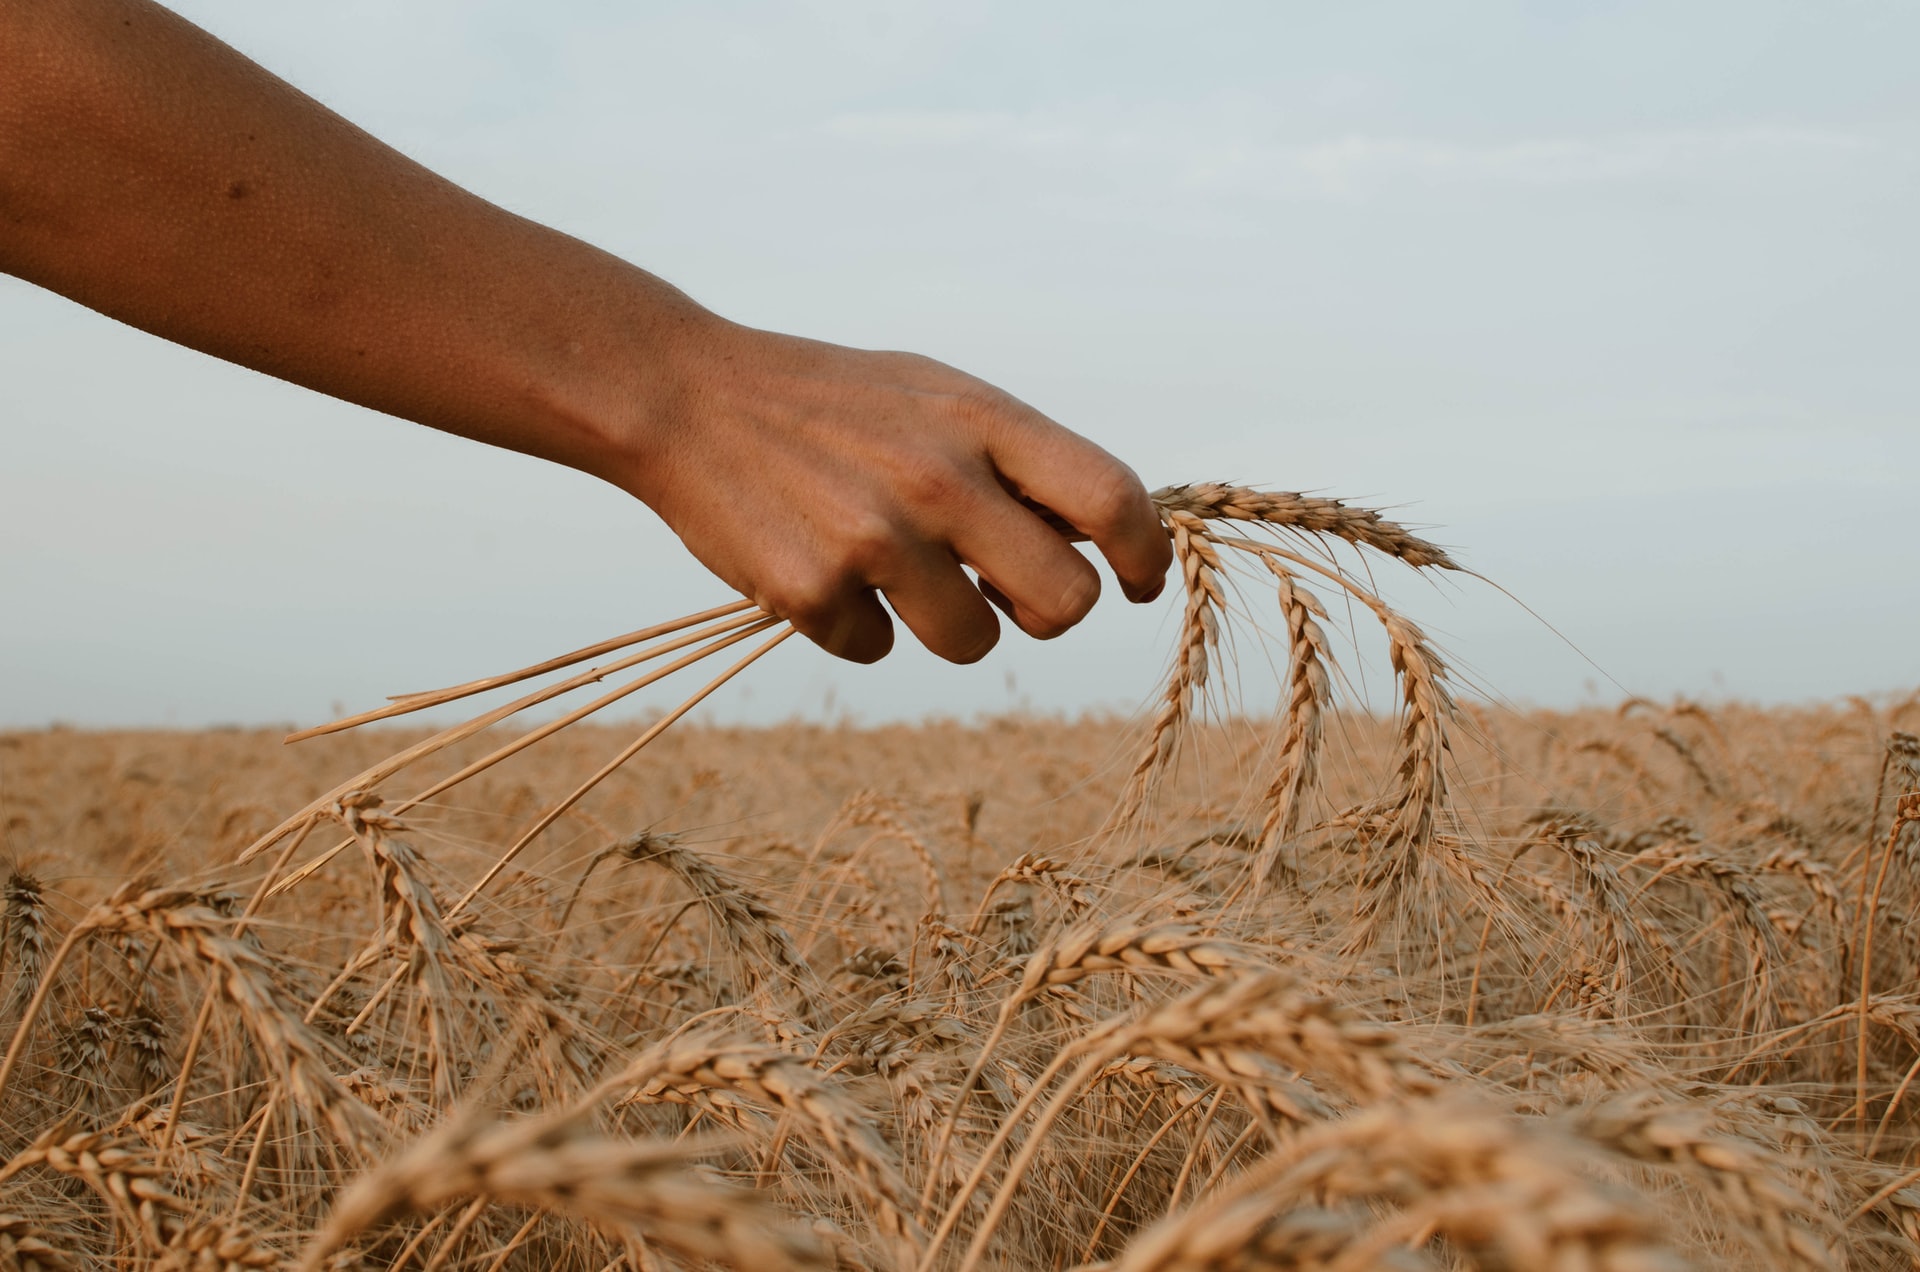 Espigas de trigo – La senda del sombrero